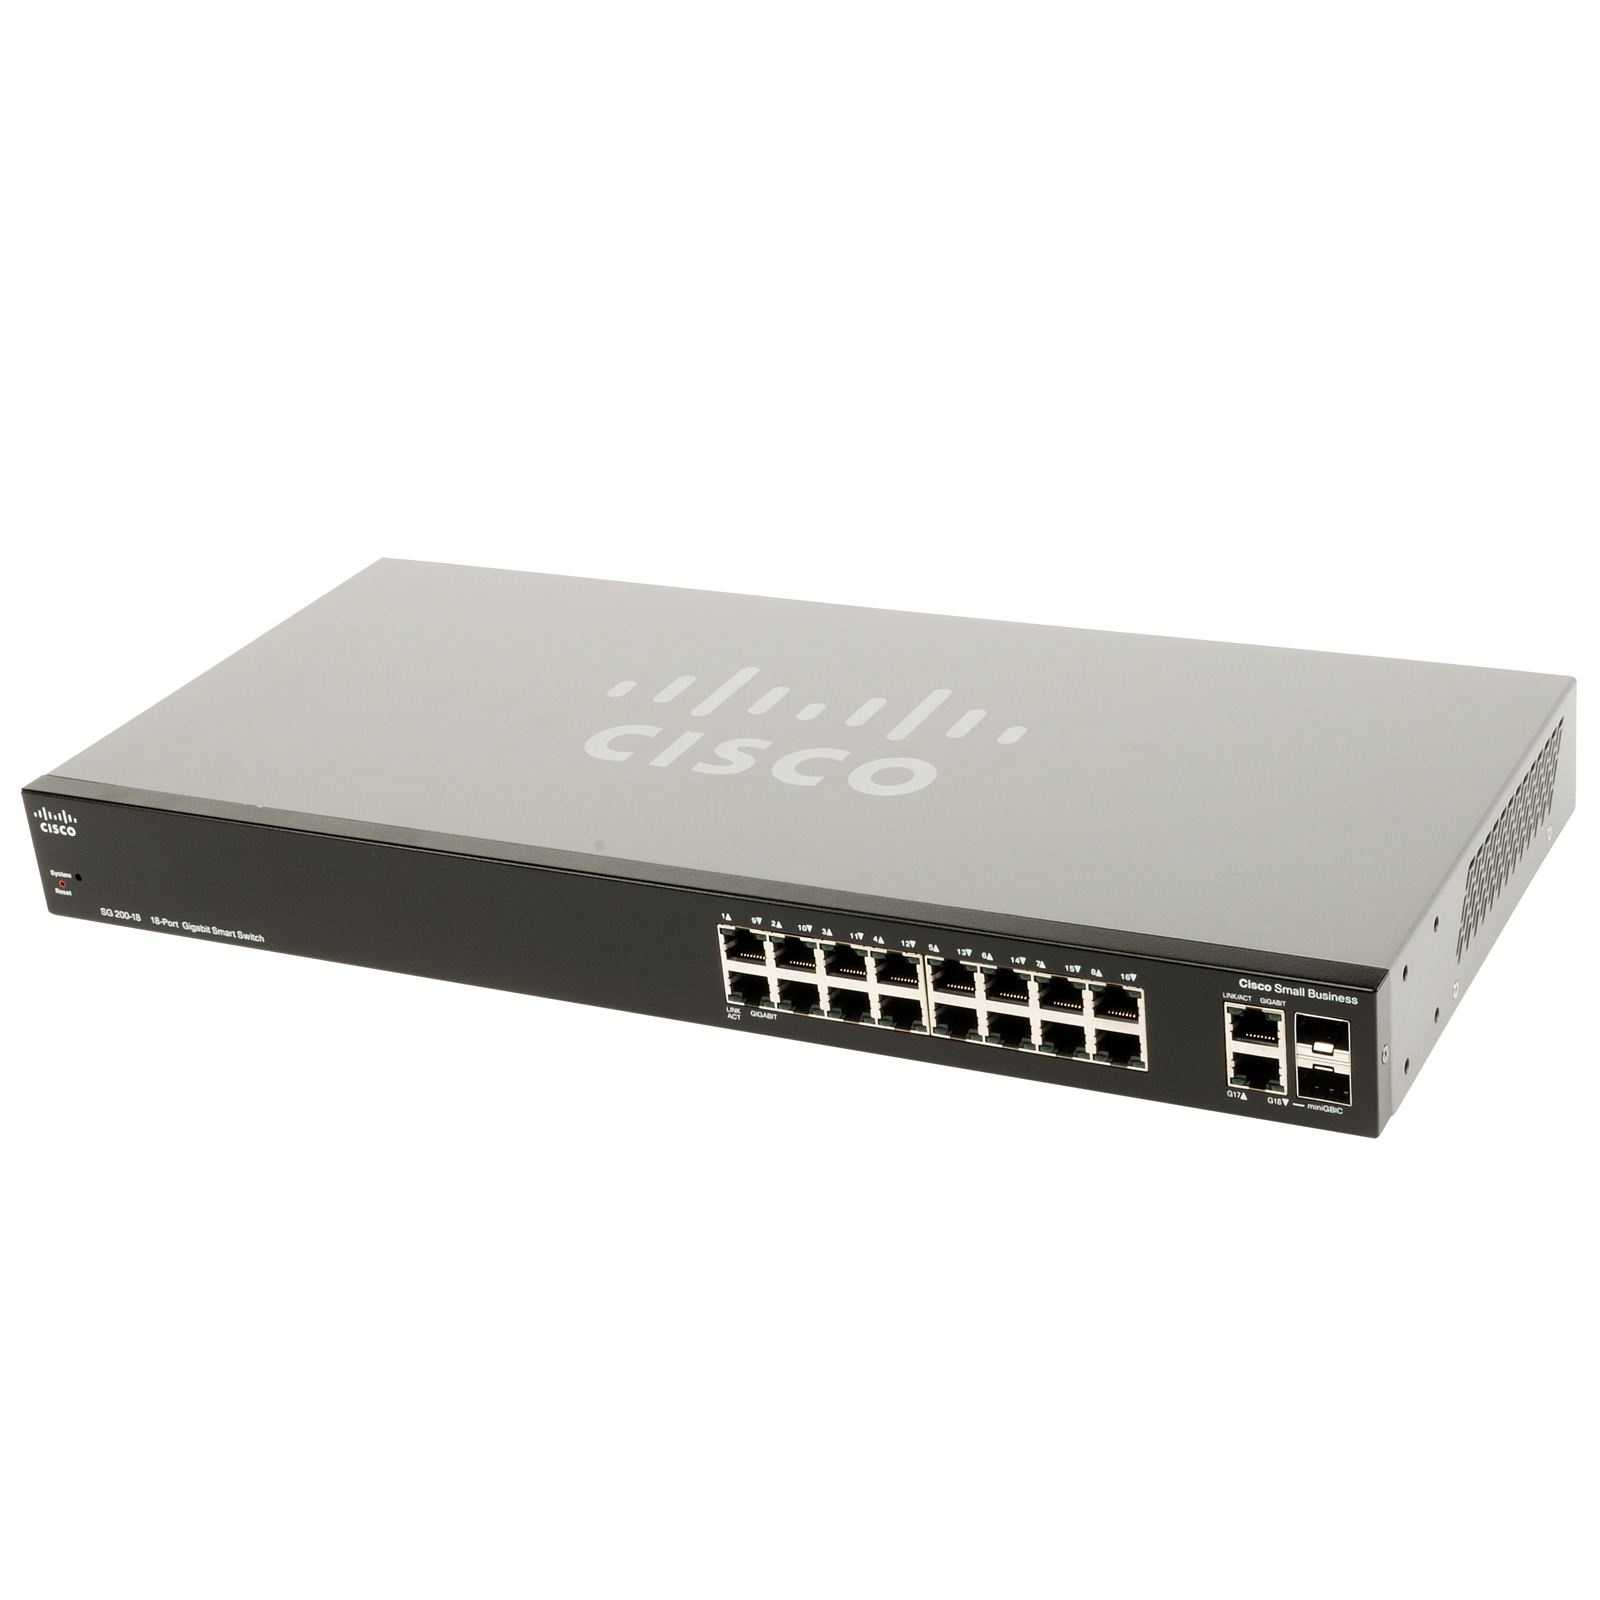 Маршрутизатор и коммутатор Cisco SR224GT - подробные характеристики обзоры видео фото Цены в интернет-магазинах где можно купить маршрутизатор и коммутатор Cisco SR224GT